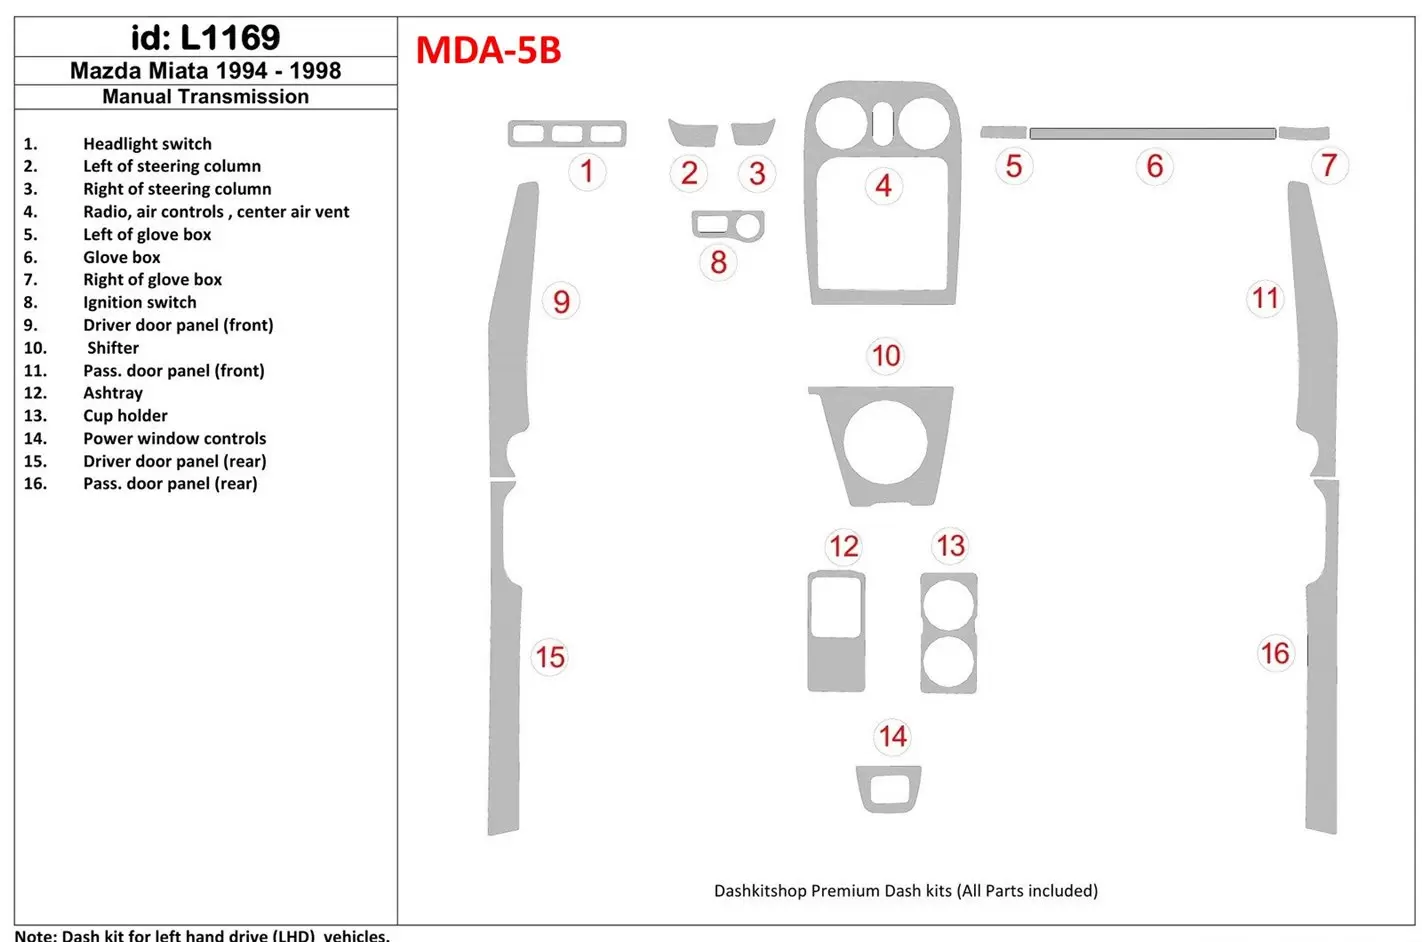 Mazda Miata 1994-1998 Ensemble Complet, boîte manuelle Box BD Kit la décoration du tableau de bord - 1 - habillage decor de tabl